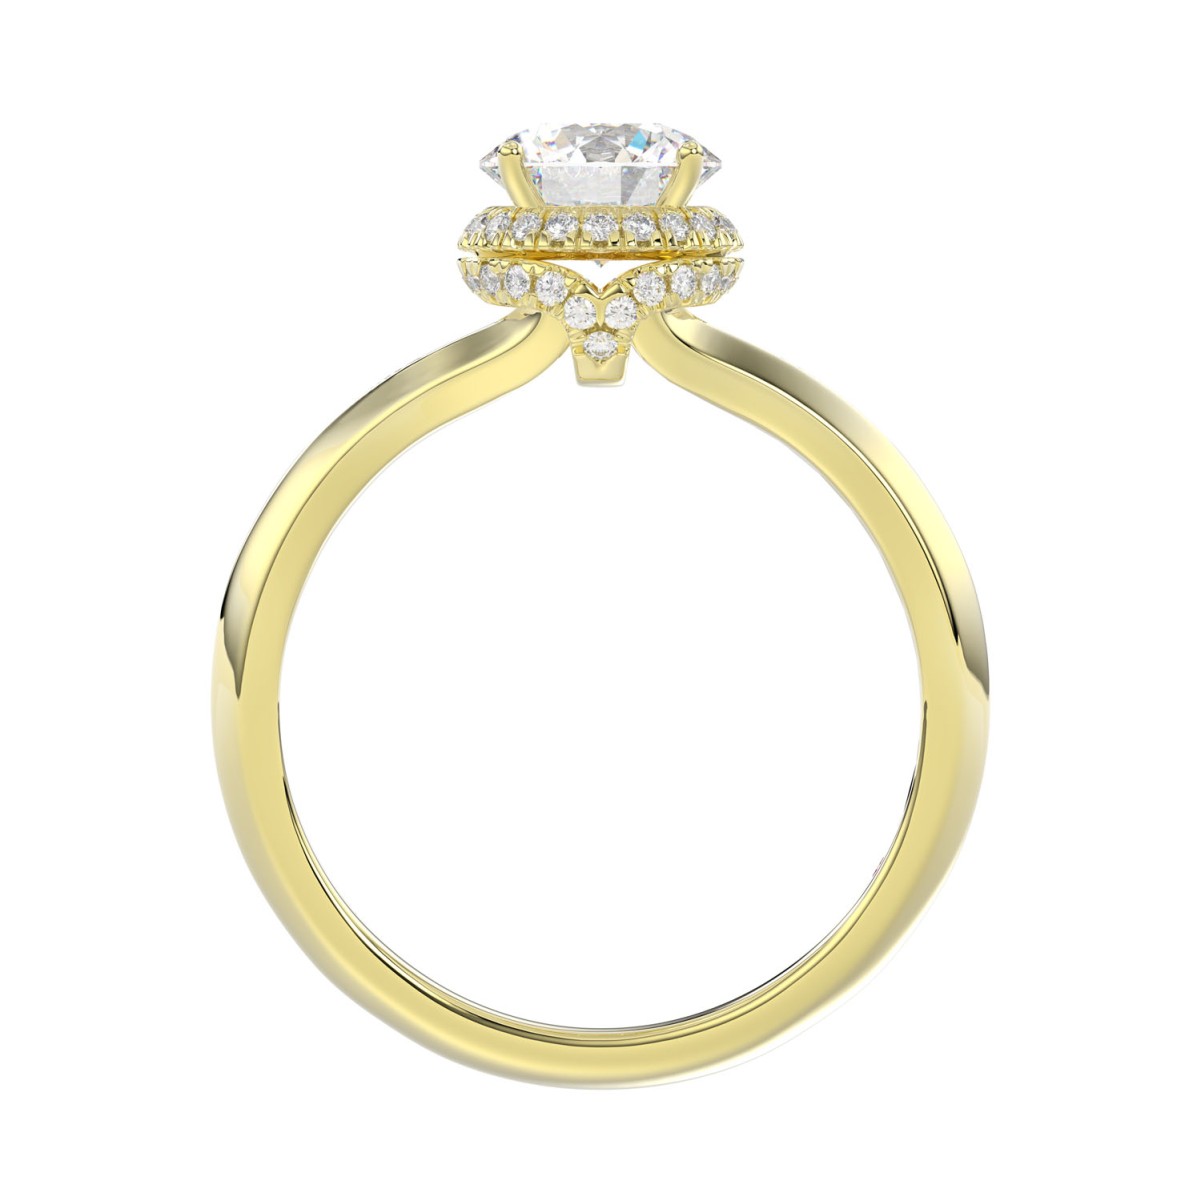 18K YELLOW GOLD 1CT ROUND DIAMOND LADIES RING( CENTER STONE ROUND DIAMOND 7/8 CT)